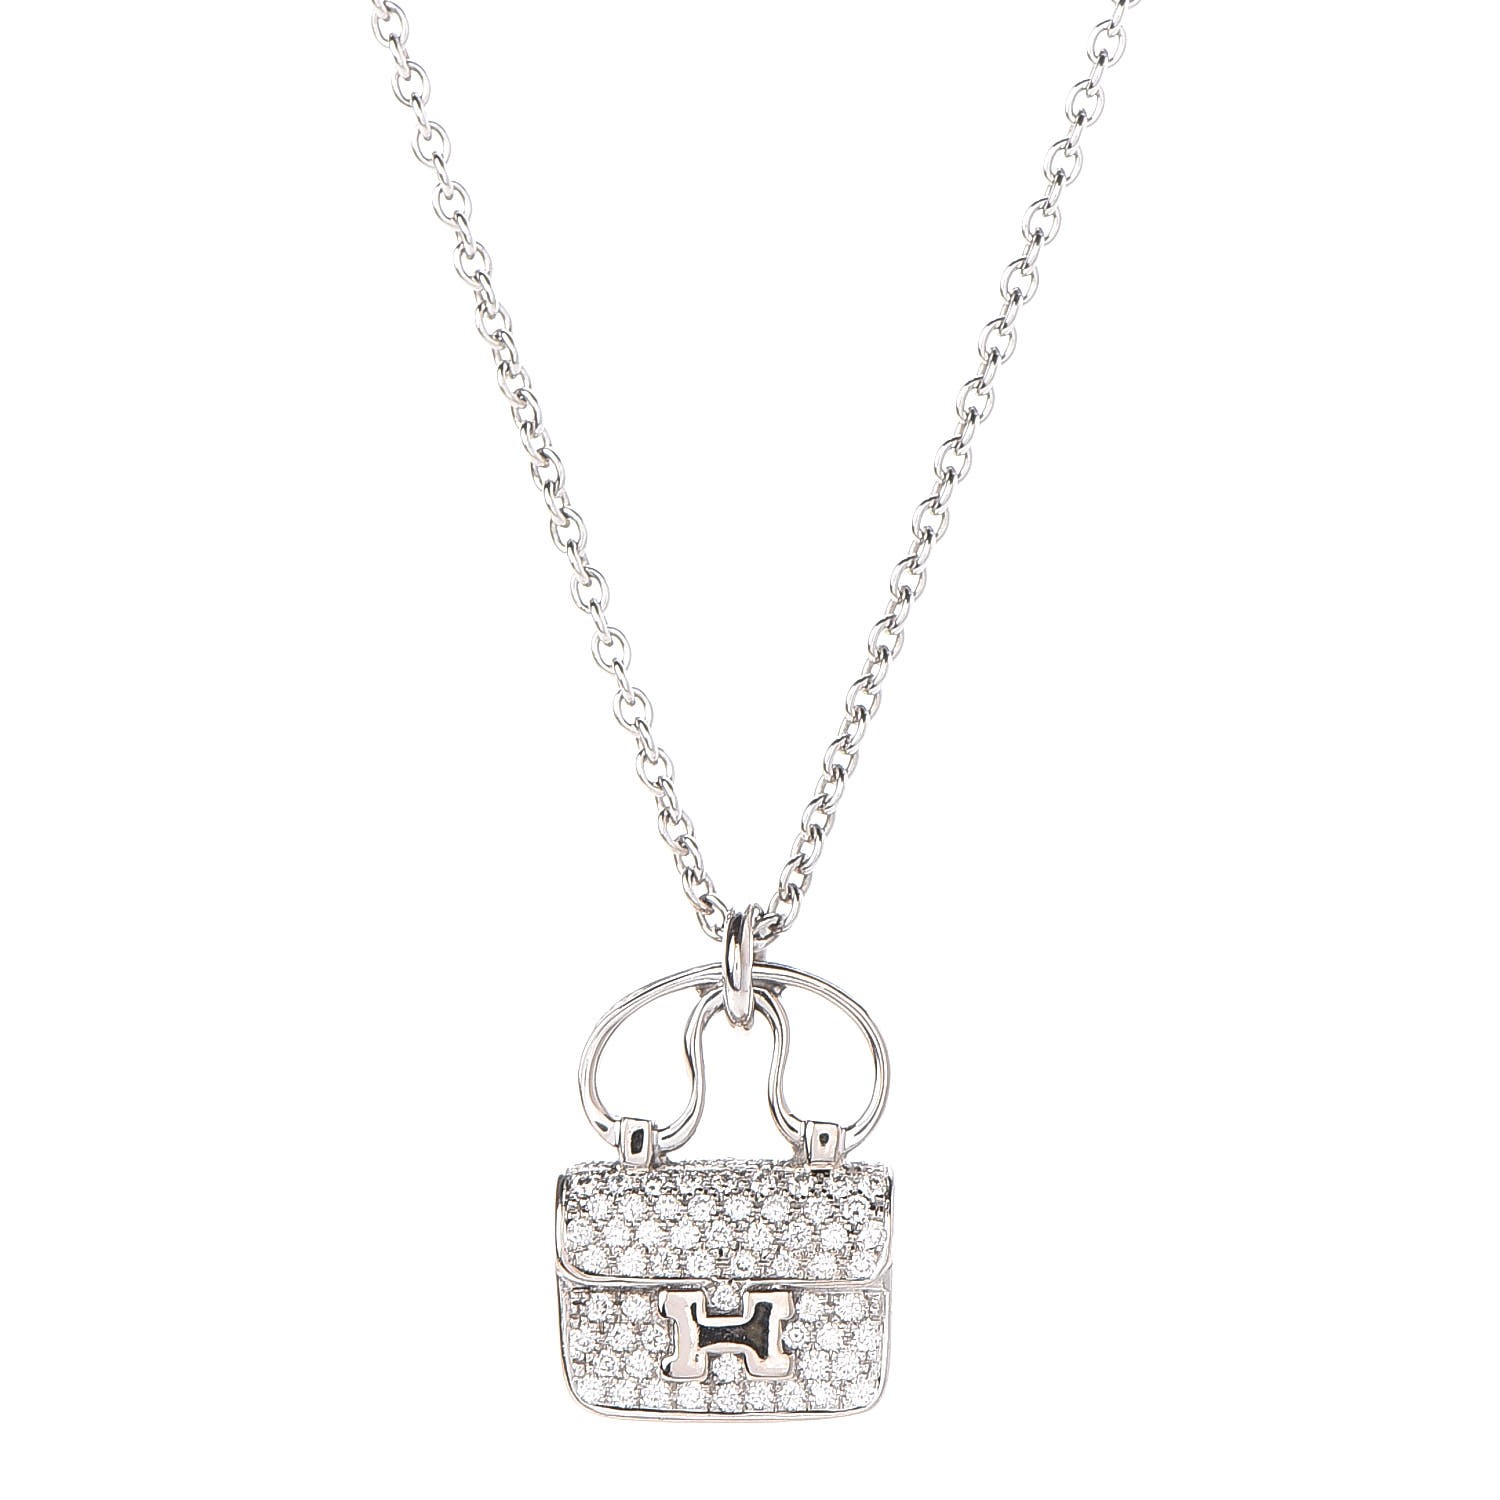 HERMES 18K White Gold Diamond Constance Amulette Pendant Necklace 317676